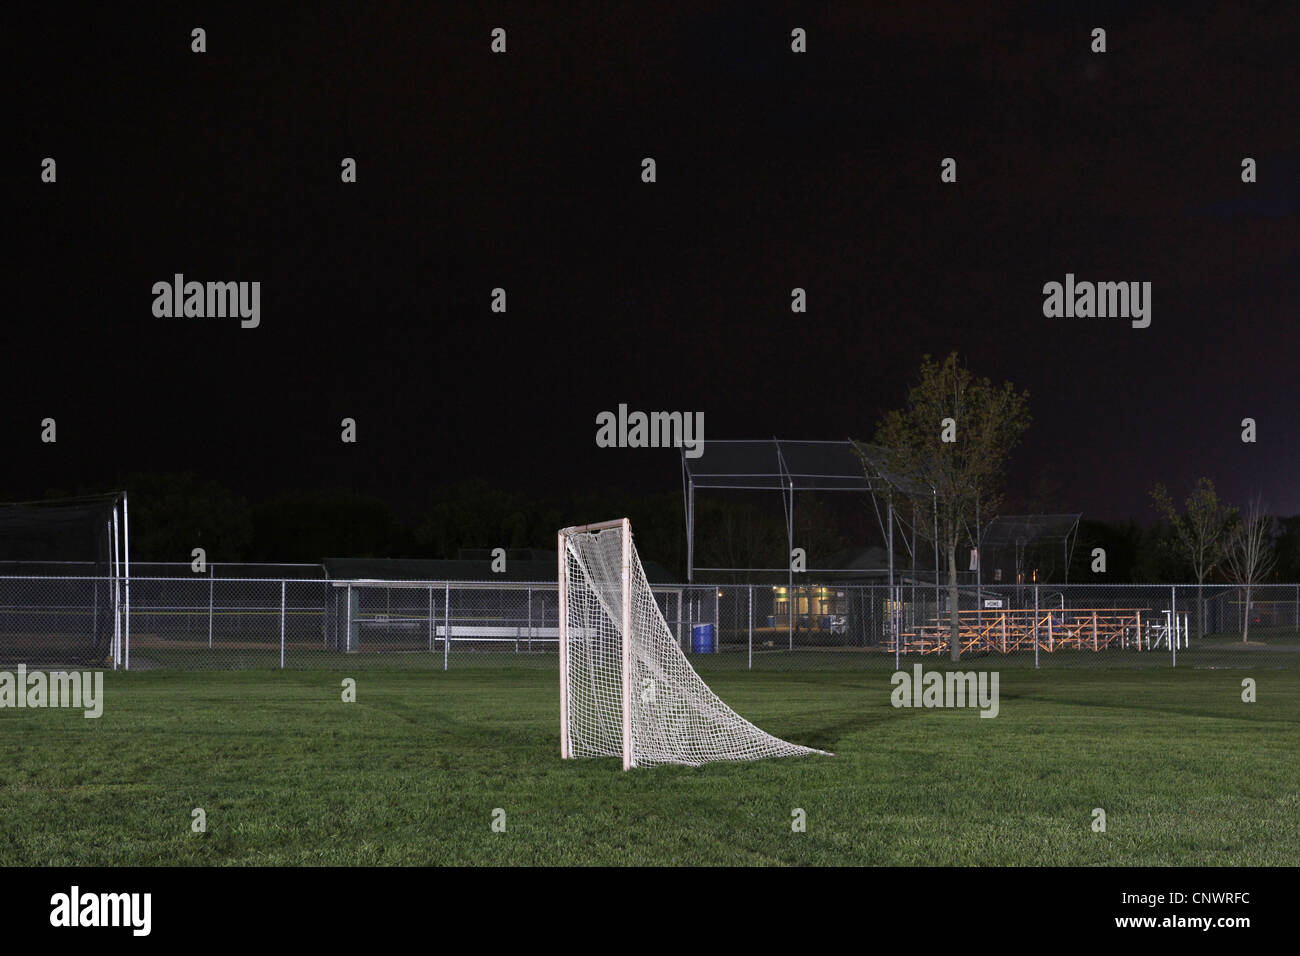 Un but de soccer éclairés dans un vide sombre, terrain de soccer. Banque D'Images